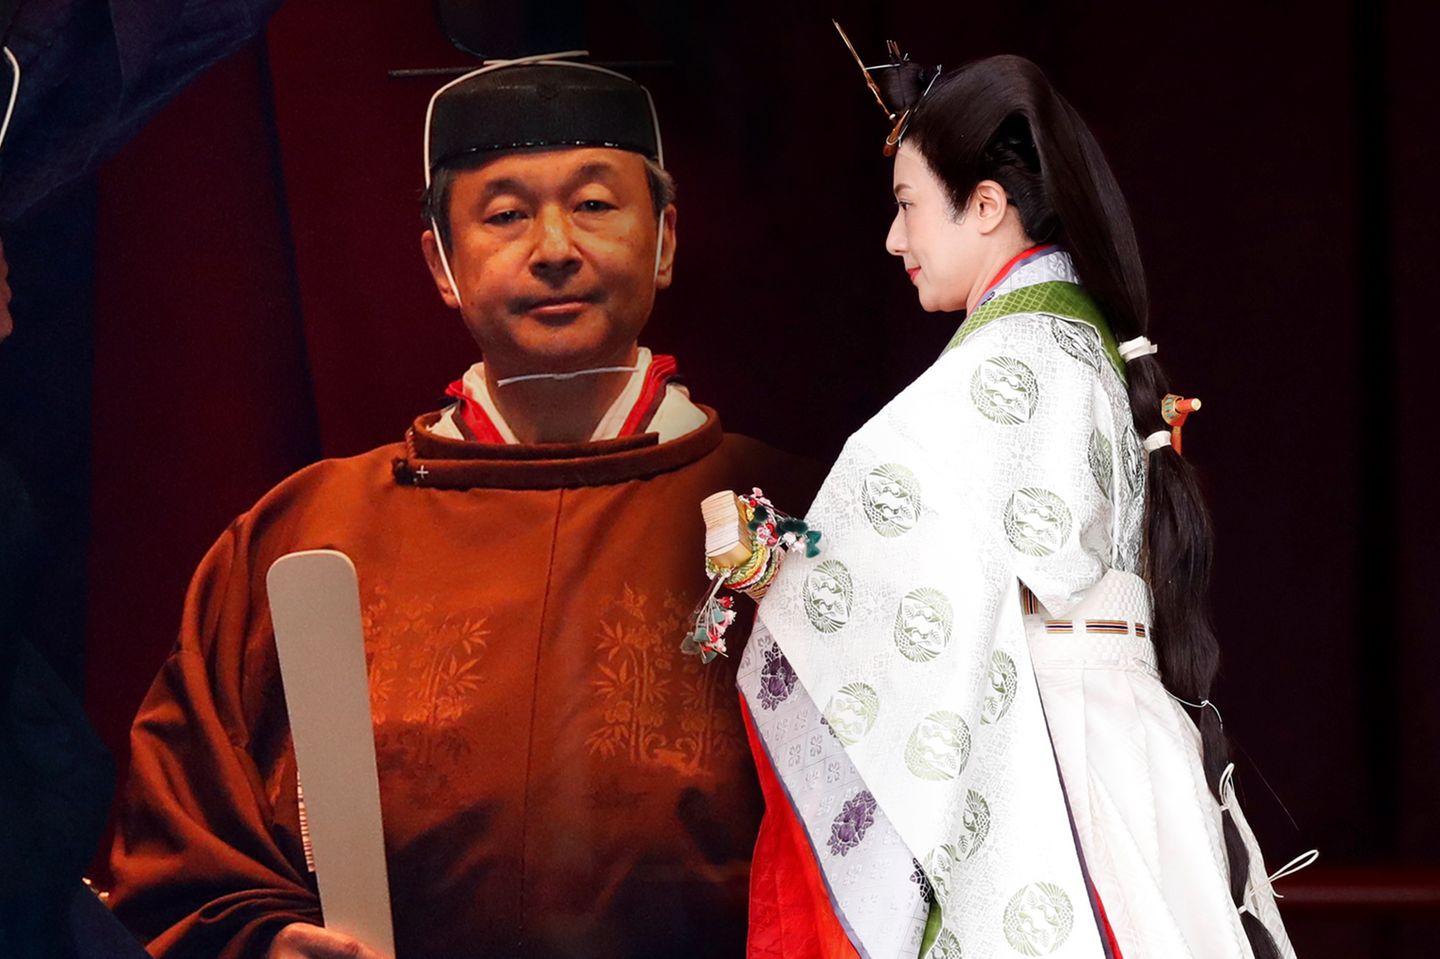 Am 22. und 23. Oktober 2019 findet die offizielle Krönungszeremonie für Kaiser Naruhito und Kaiserin Masako statt.